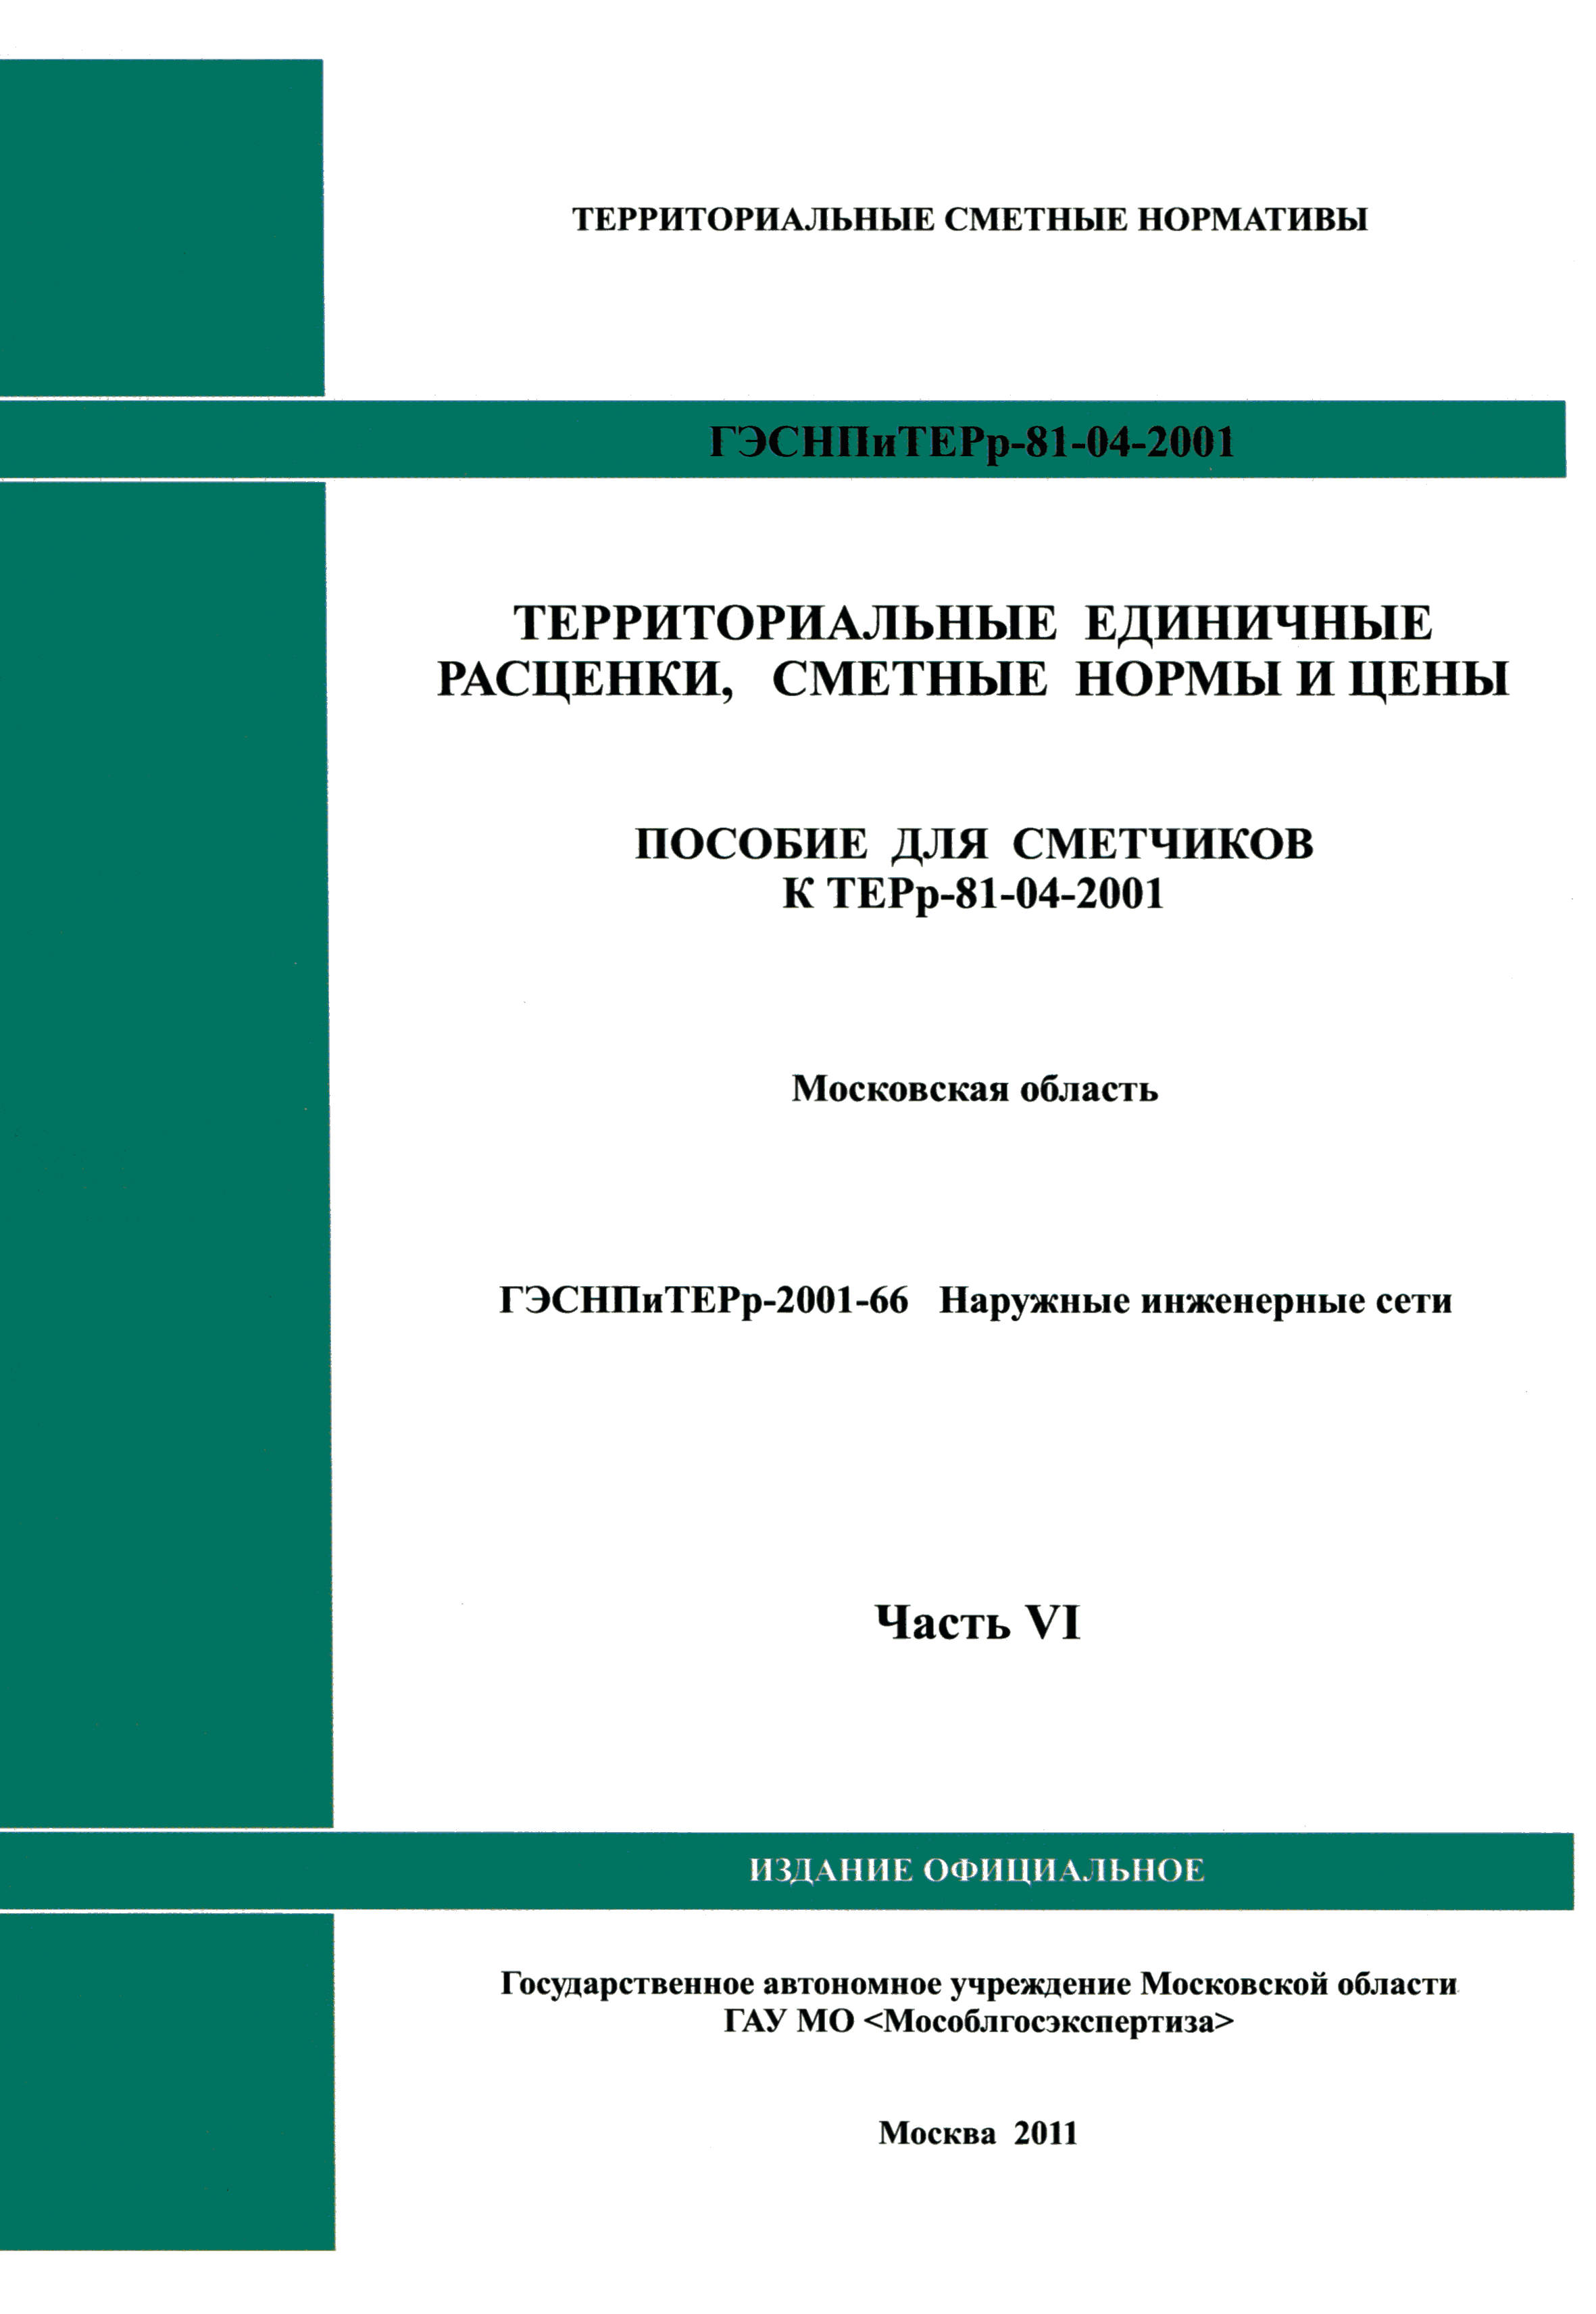 ГЭСНПиТЕРр 2001-66 Московской области